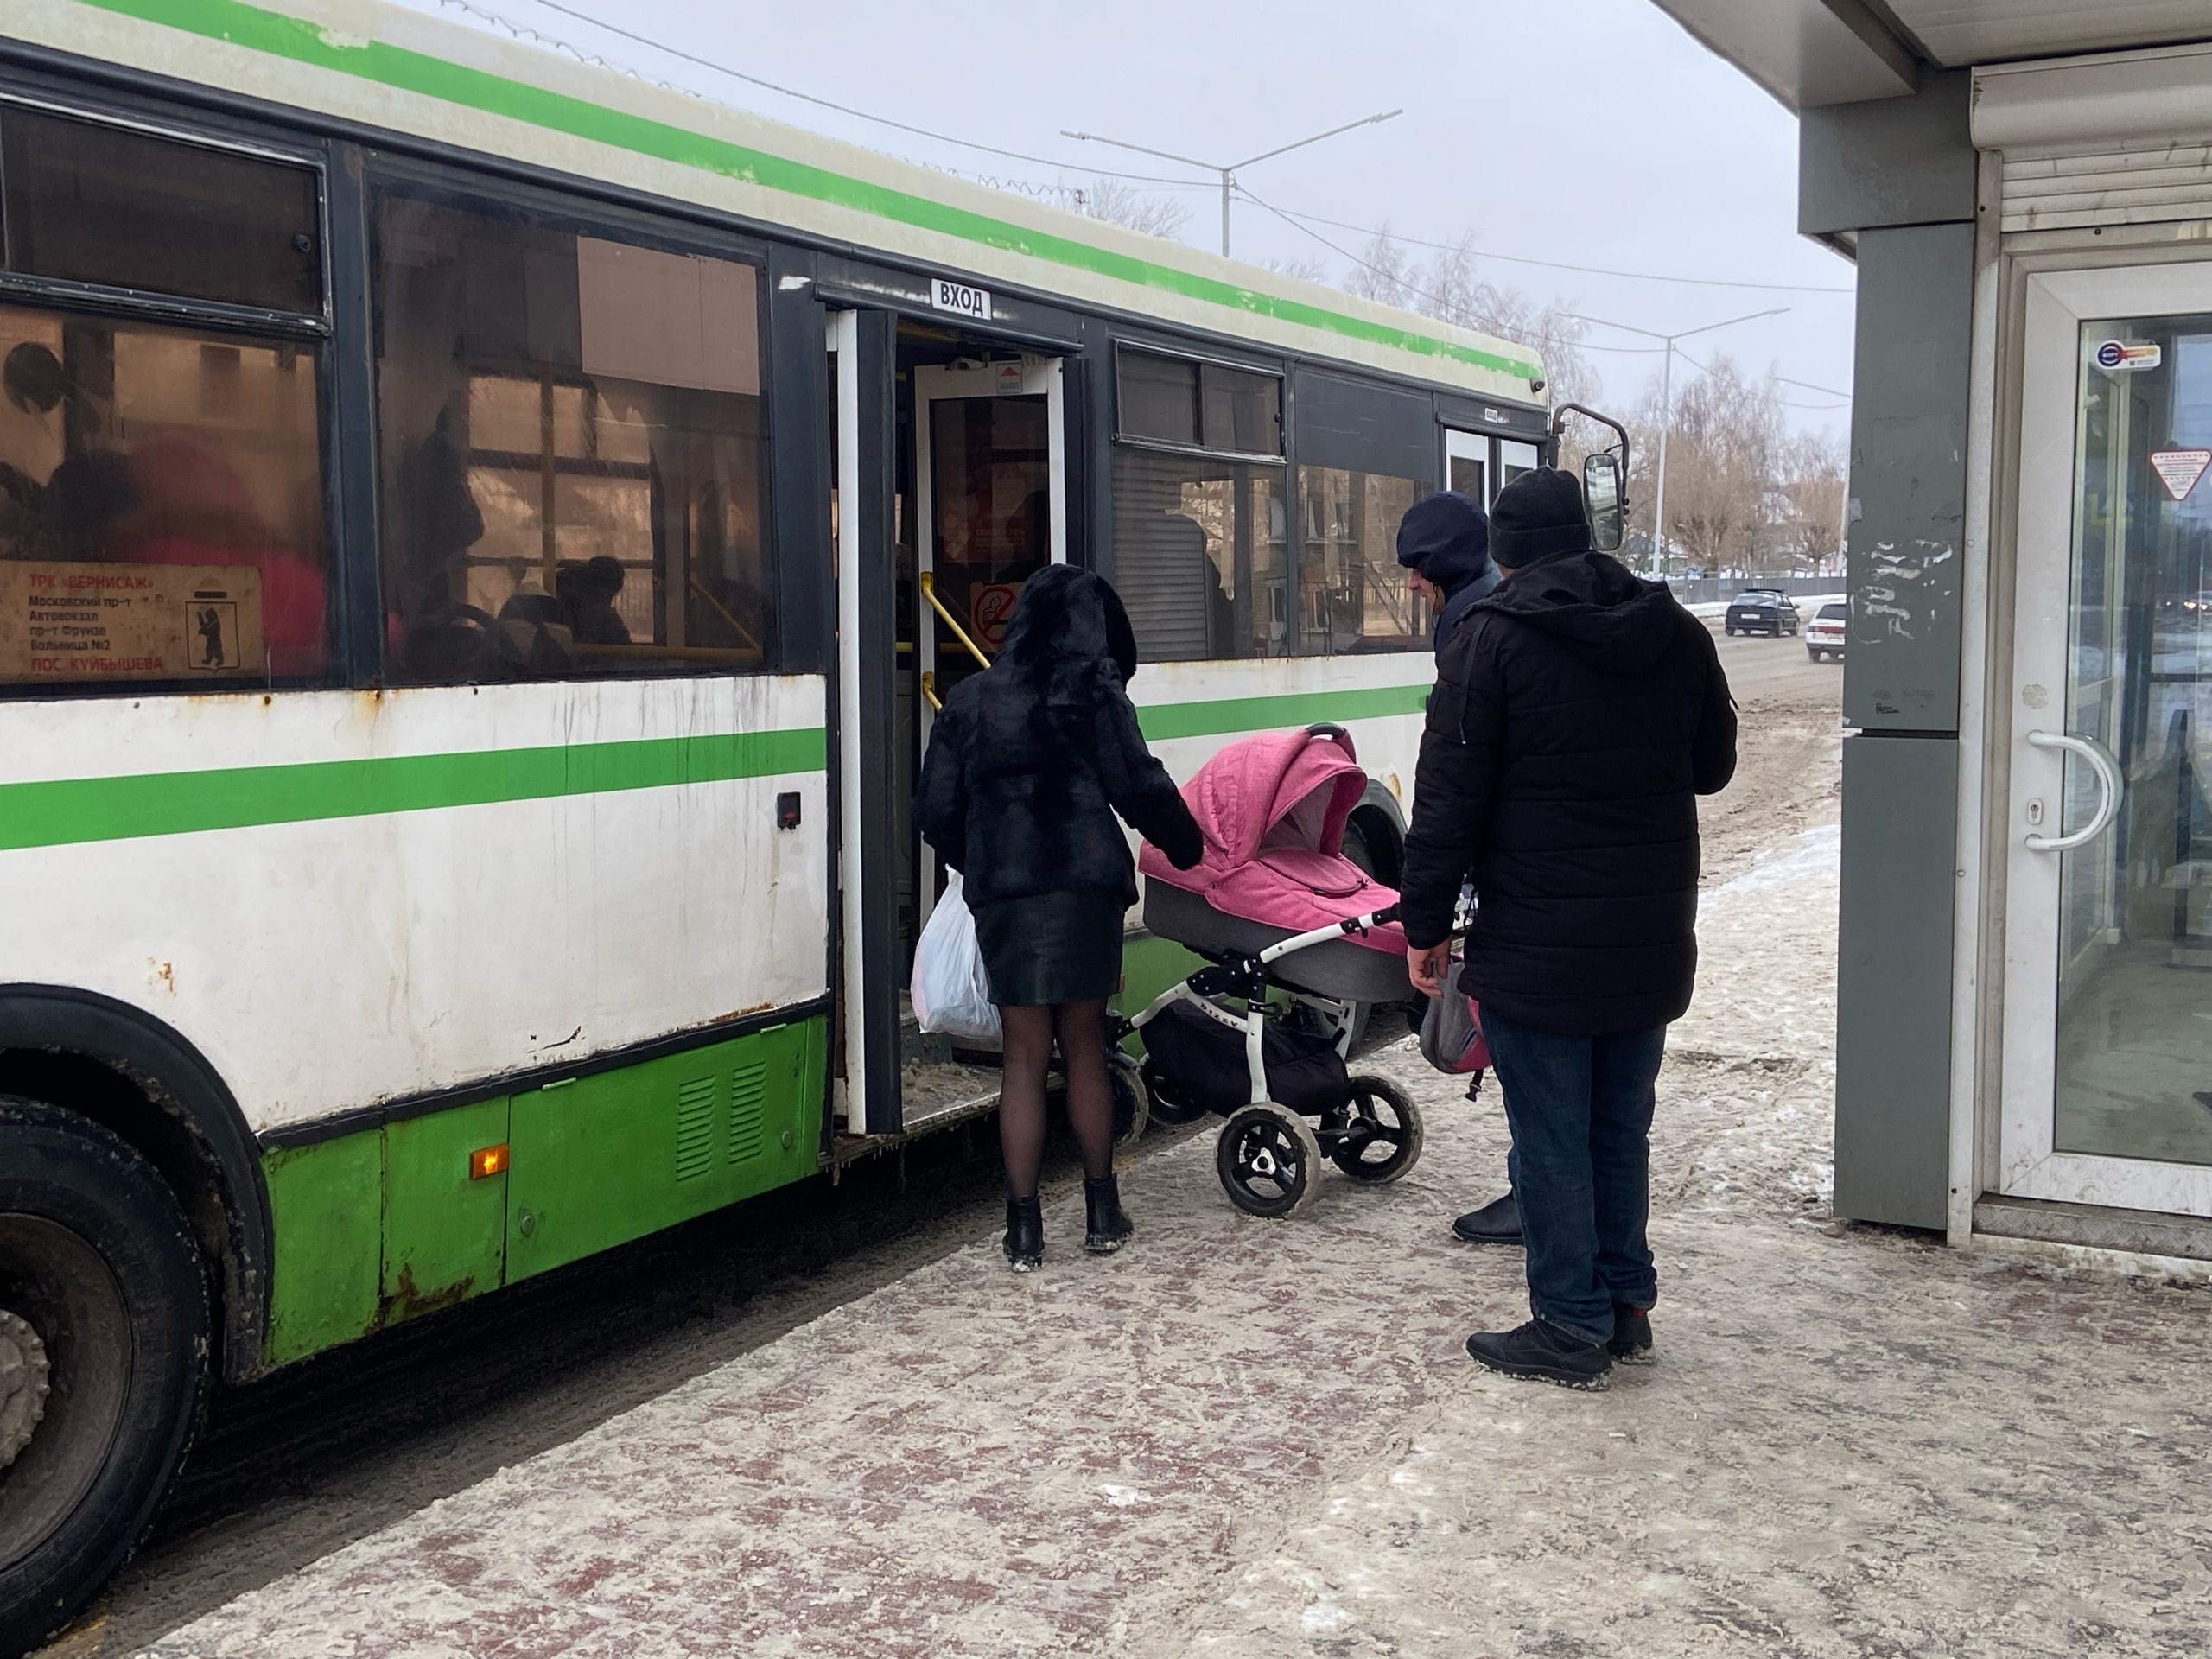 "Слишком узкие улицы": чиновники объяснили переход на малые автобусы в Ярославле